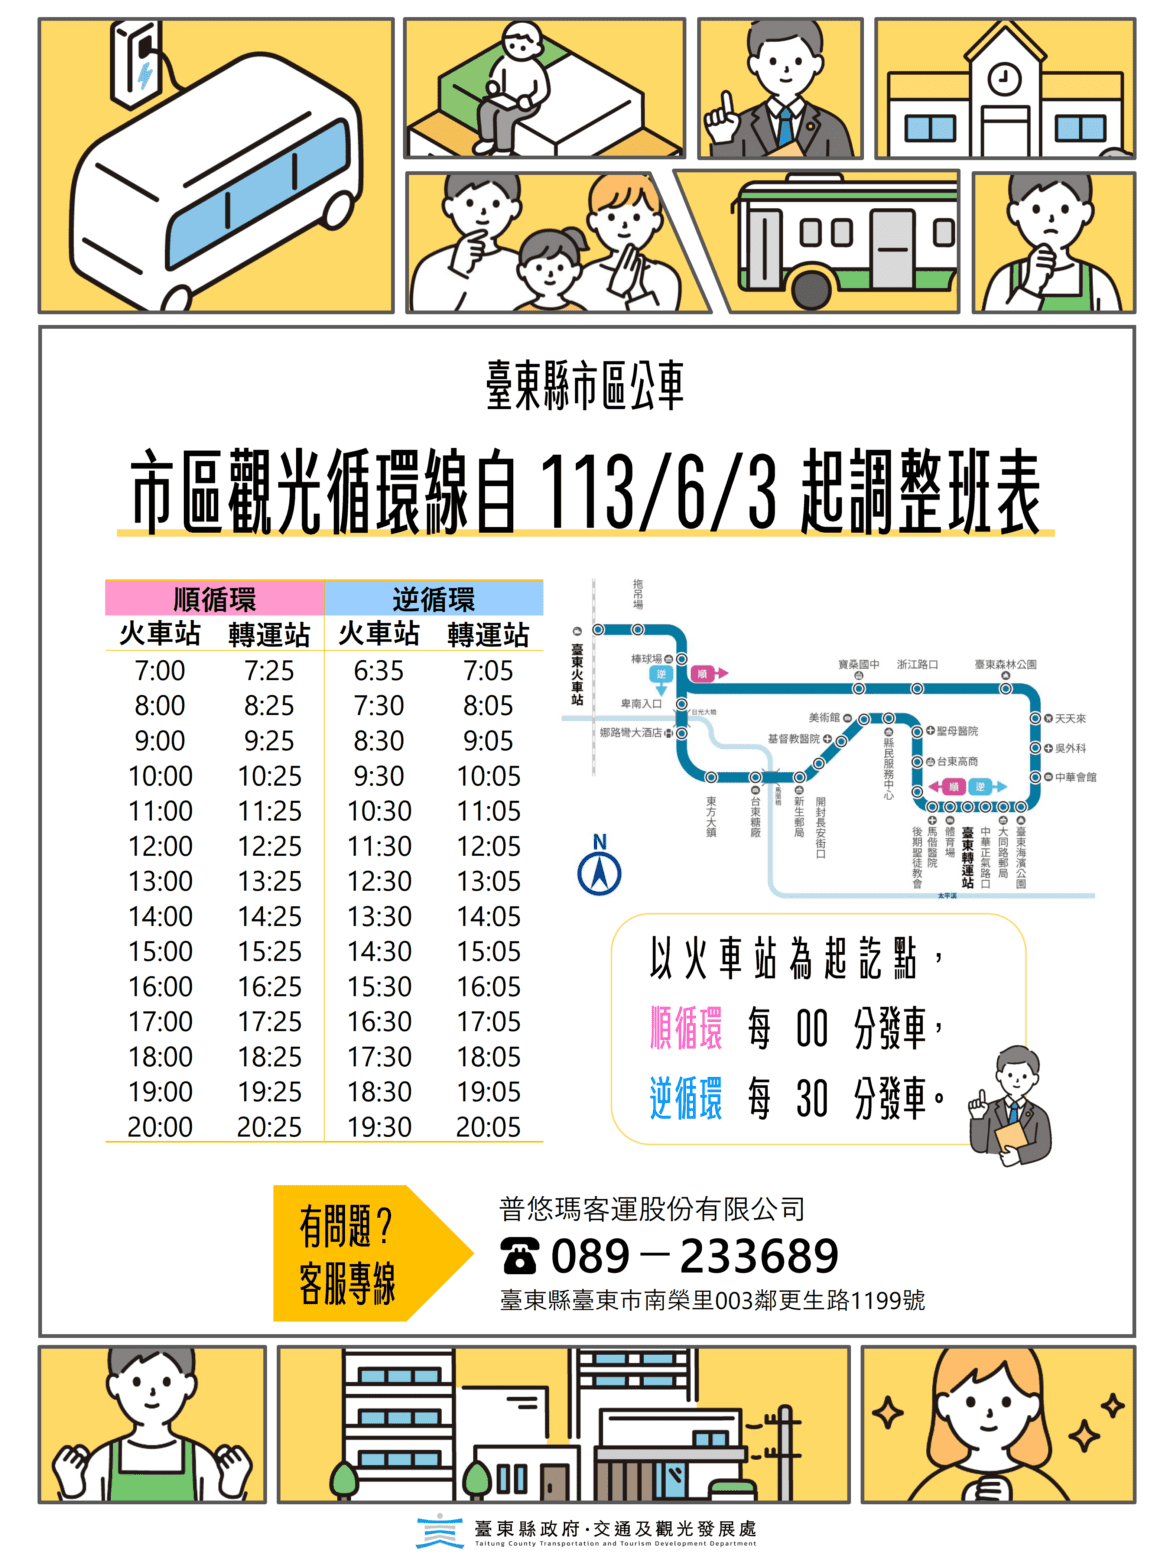 臺東縣普悠瑪公車市區觀光循環線6/3起改點  搭乘更便利